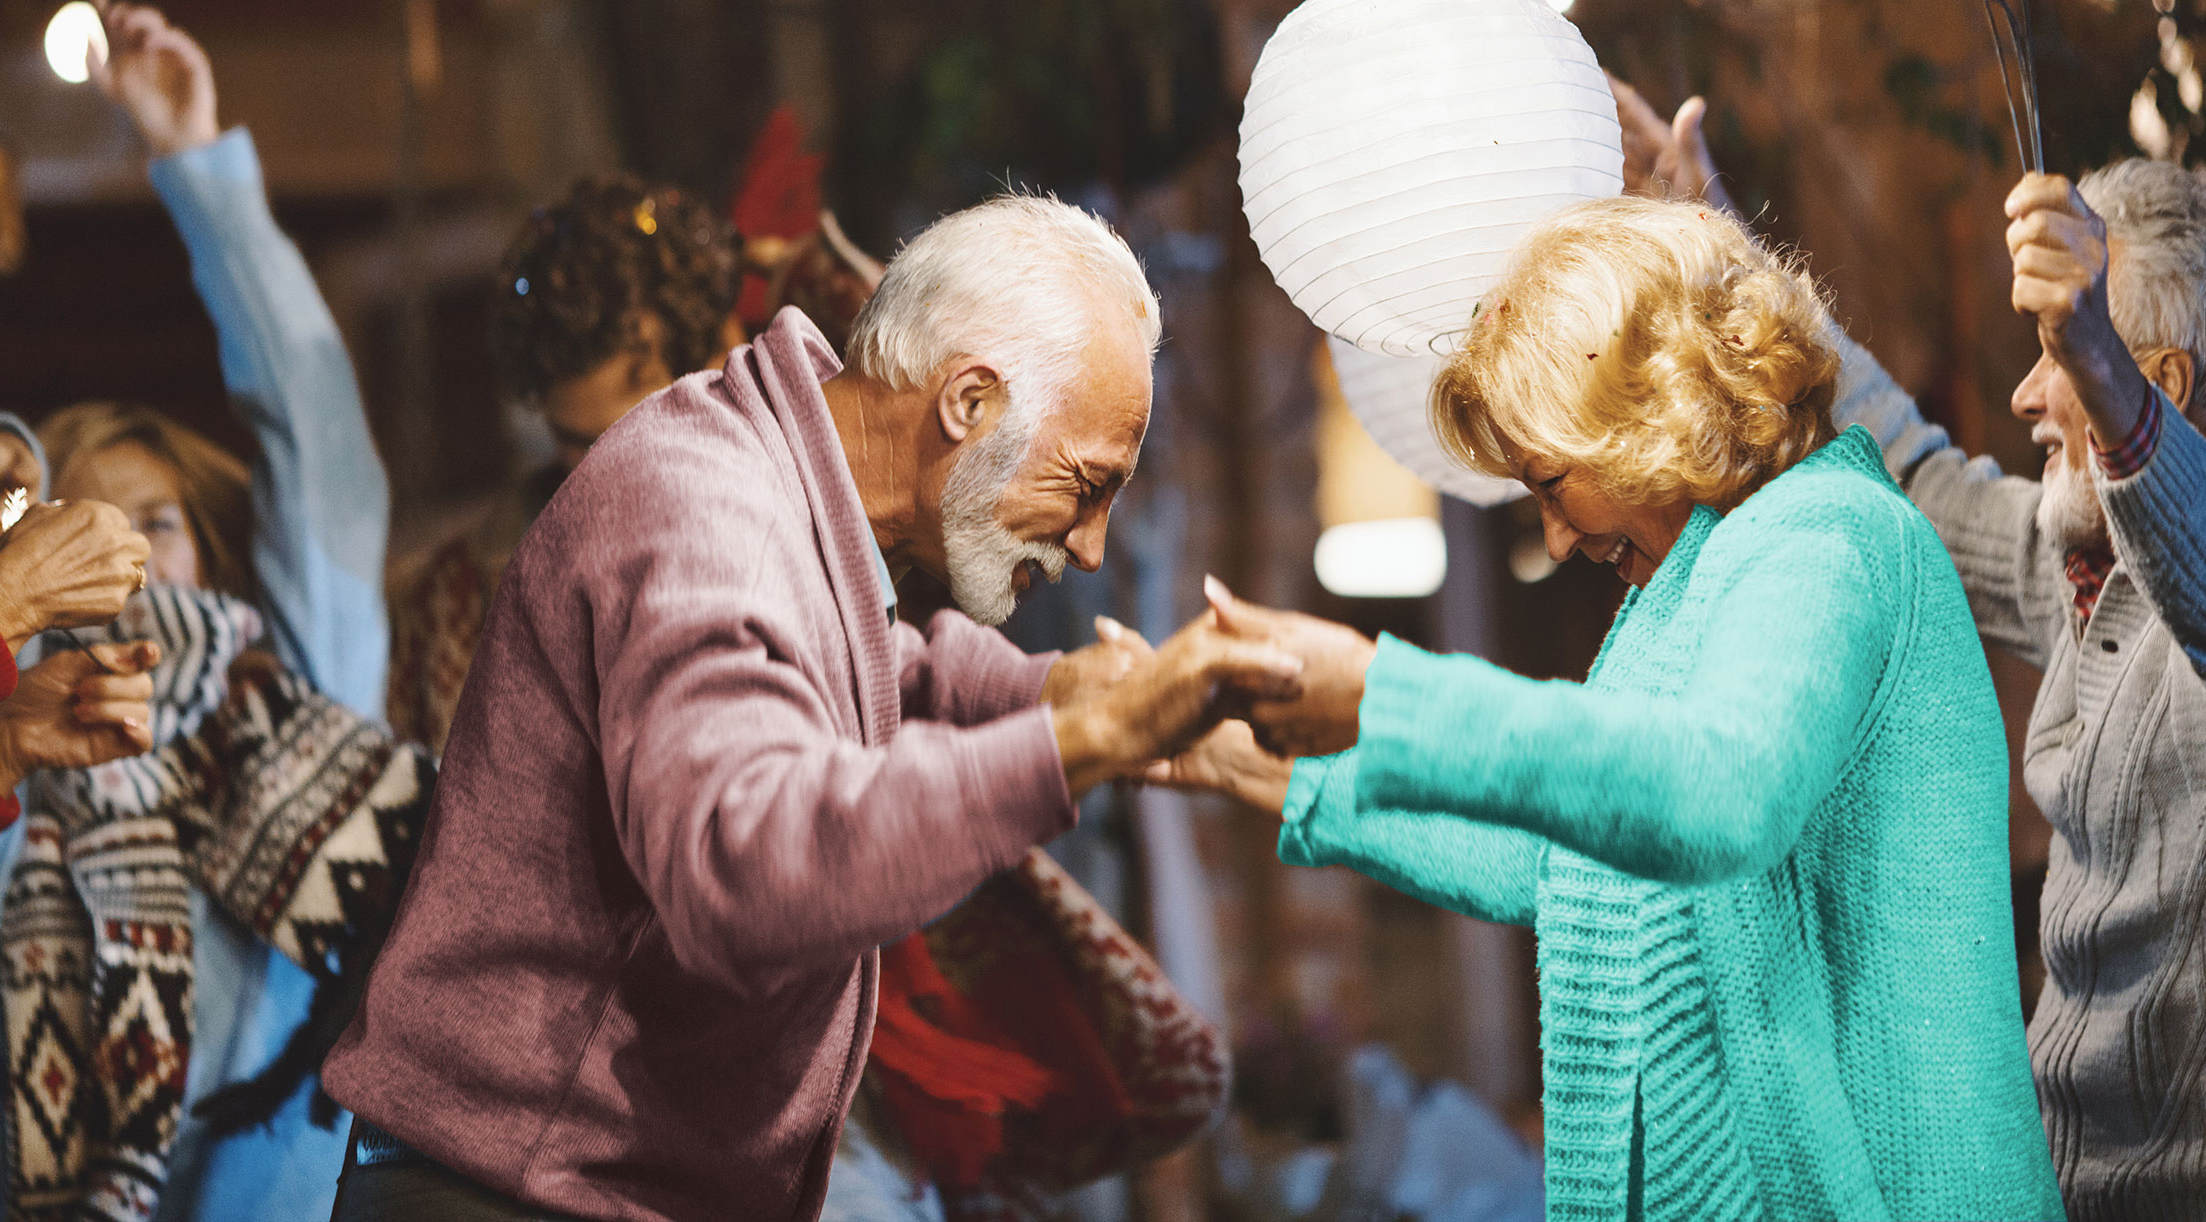 Un couple de retraités danse et se tient la main sous la lumière de lanternes rondes.